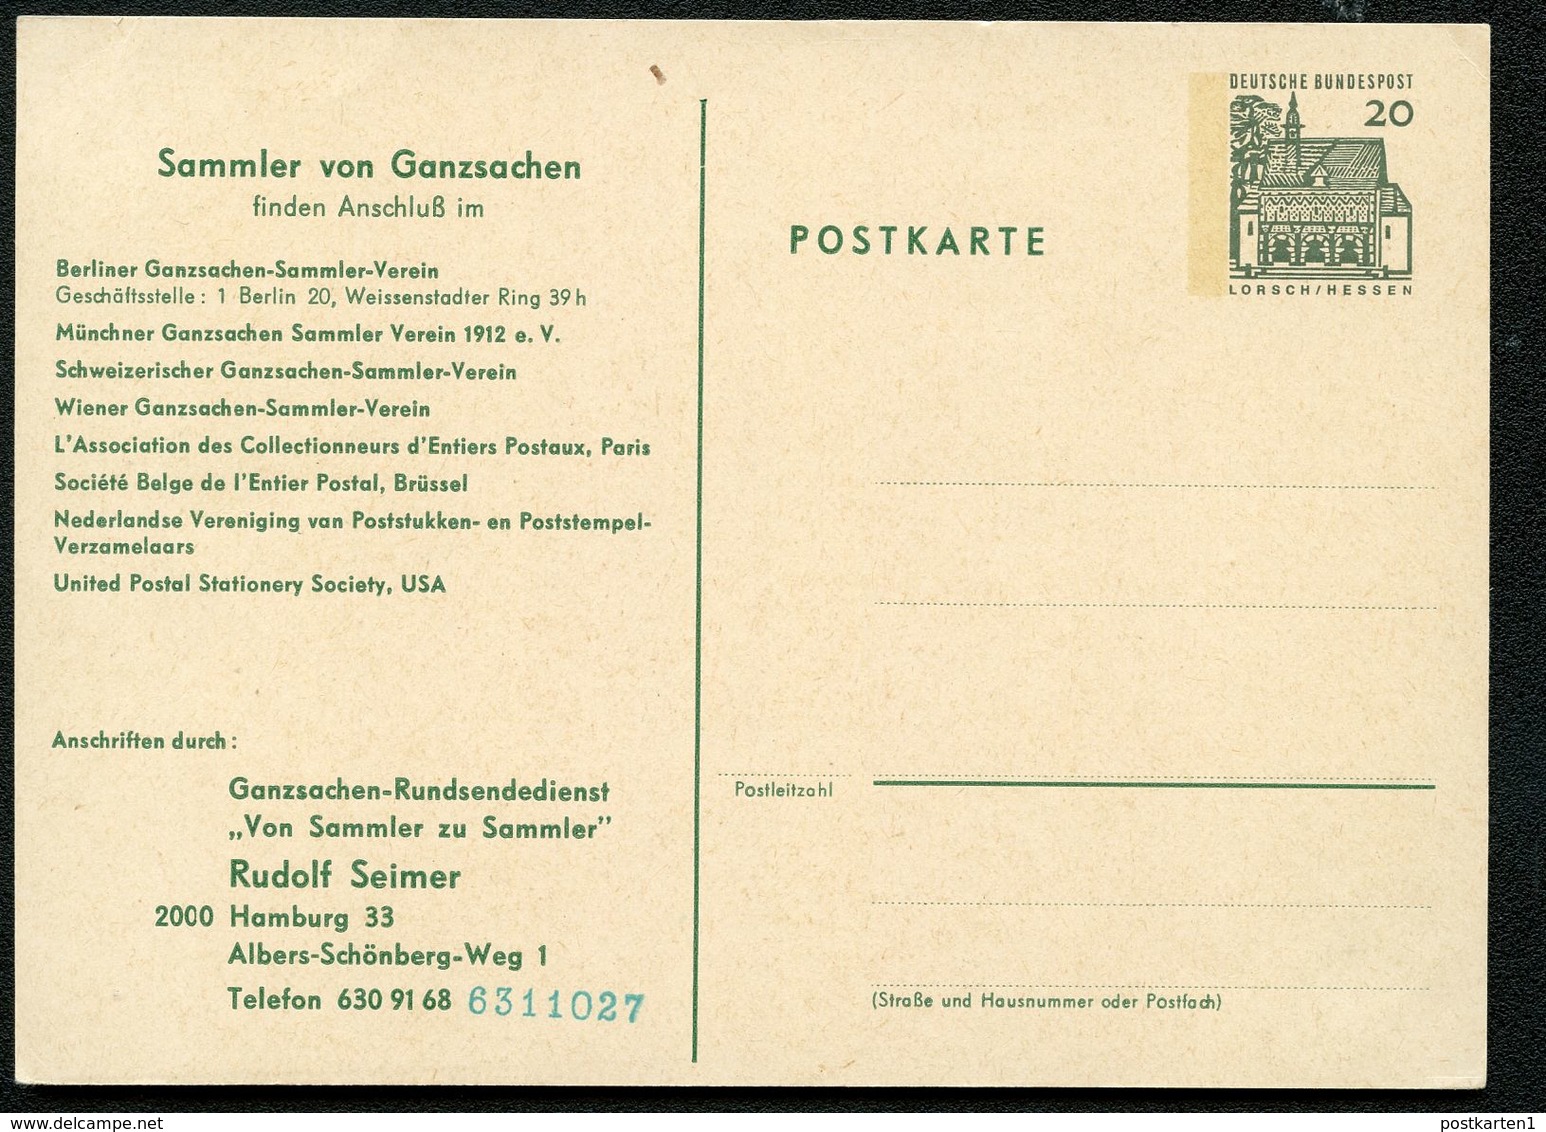 Bund PP36 B2/001 GANZSACHEN-RUNDSENDEDIENST 1966  NGK 4,00 € - Private Postcards - Mint